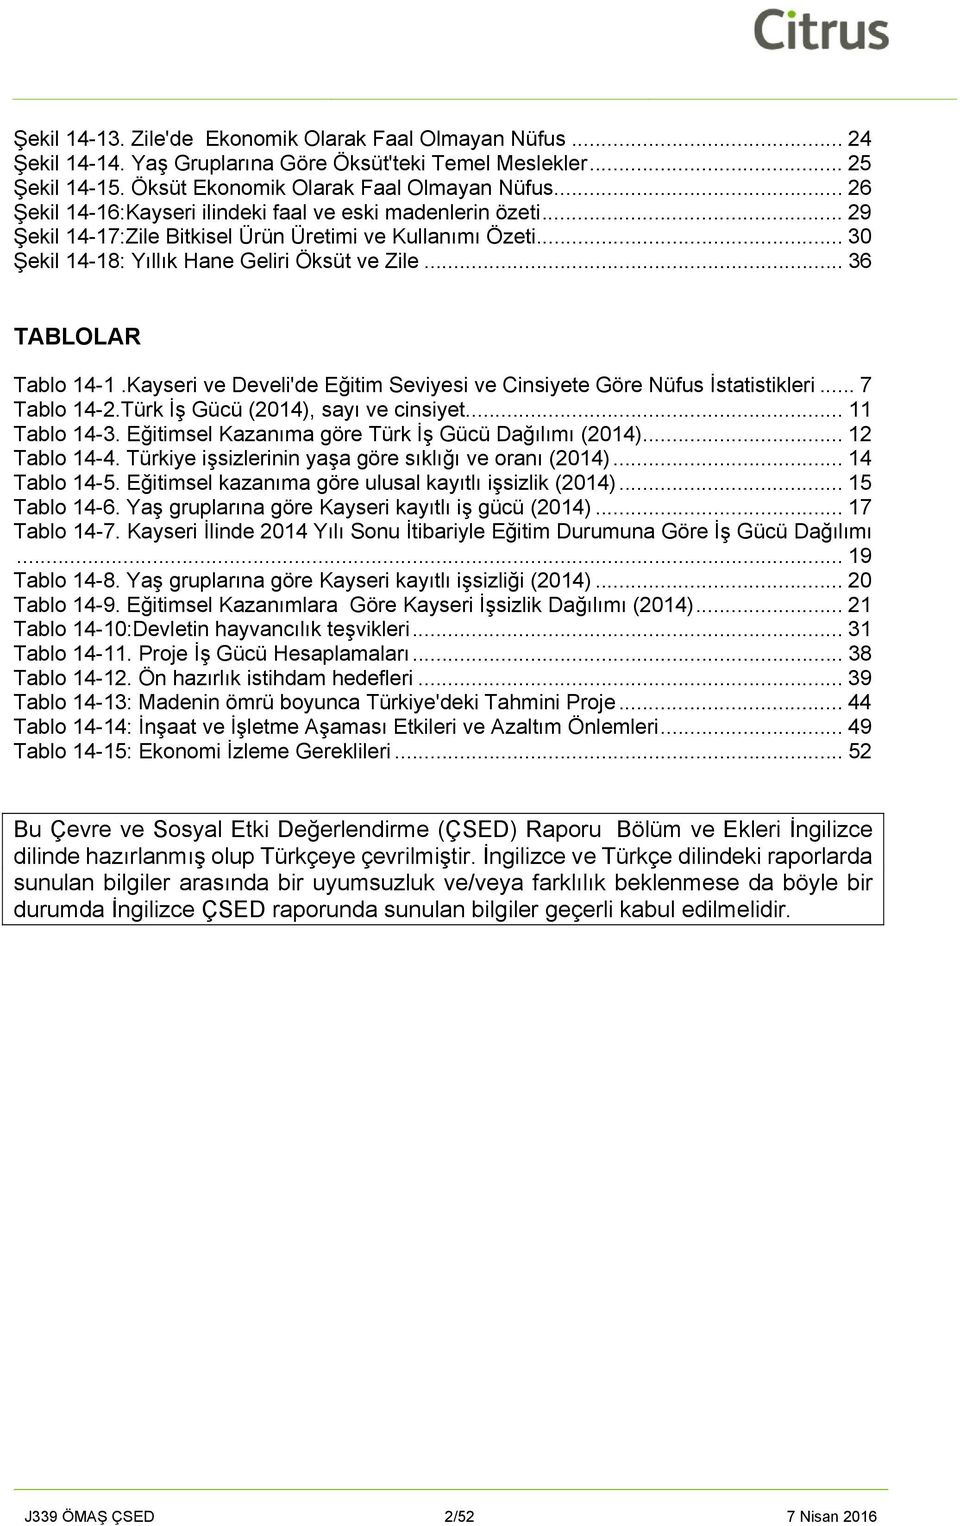 .. 36 TABLOLAR Tablo 14-1.Kayseri ve Develi'de Eğitim Seviyesi ve Cinsiyete Göre Nüfus İstatistikleri... 7 Tablo 14-2.Türk İş Gücü (2014), sayı ve cinsiyet... 11 Tablo 14-3.